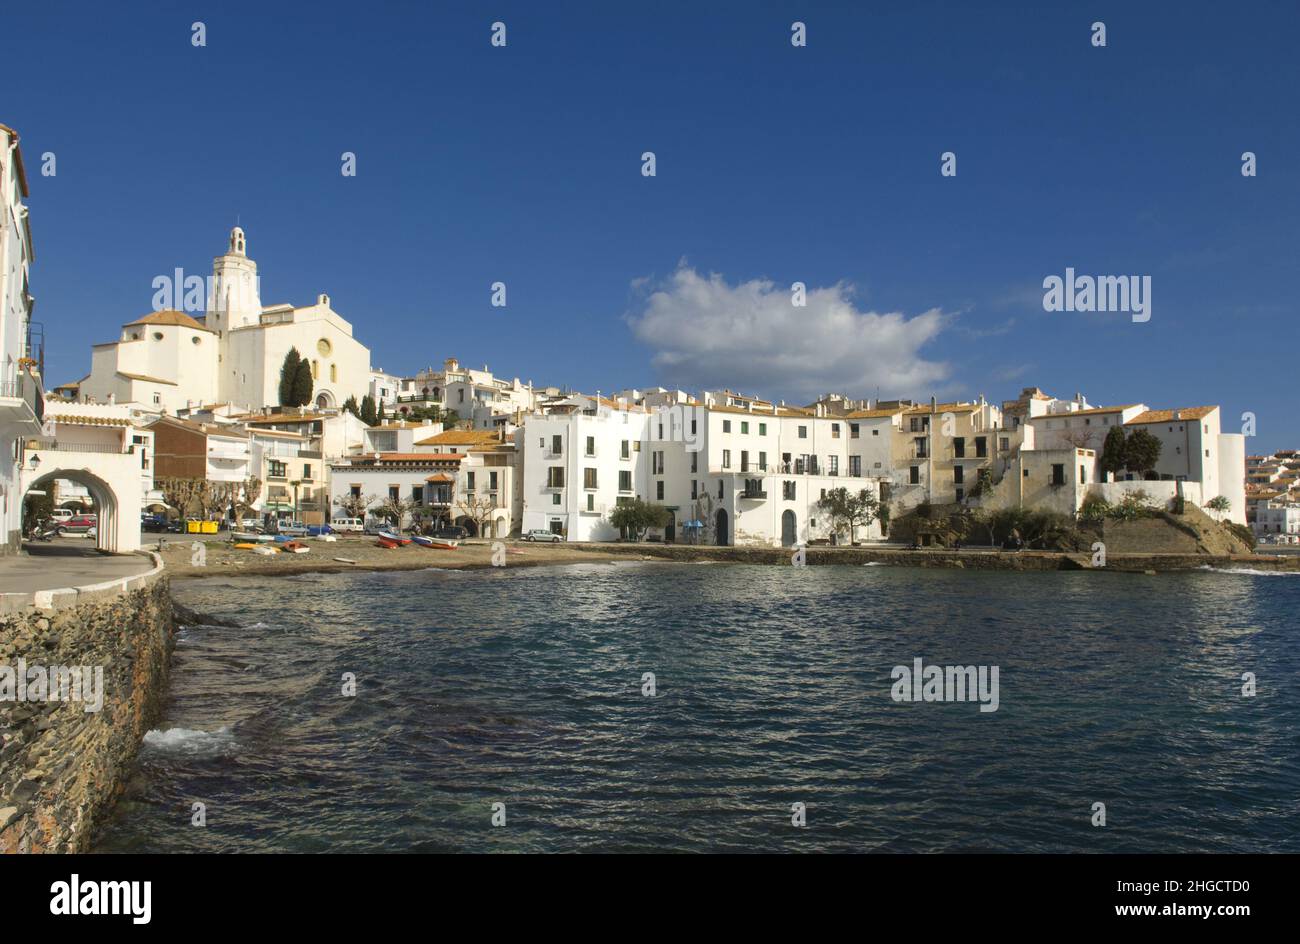 Spain costa brava Cadaques dali's village sea mediterranean coast Stock Photo